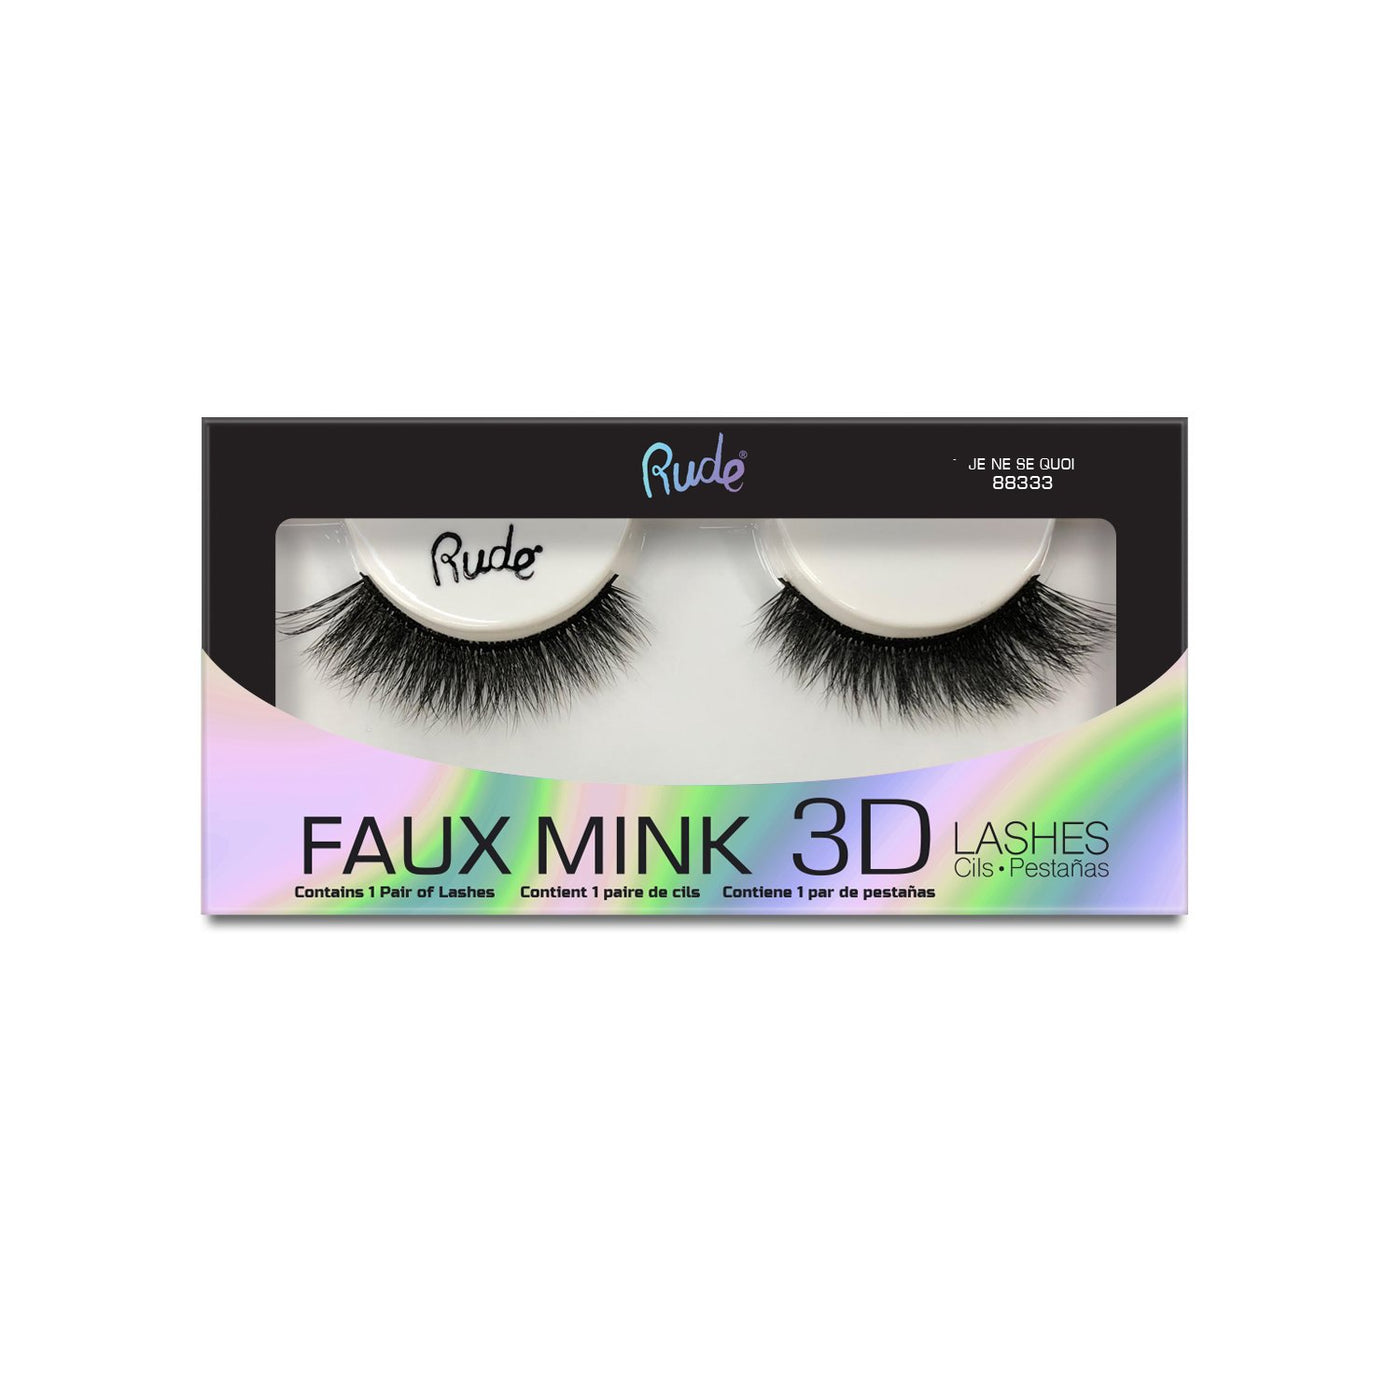  3D Faux Mink 862 : Beauty & Personal Care